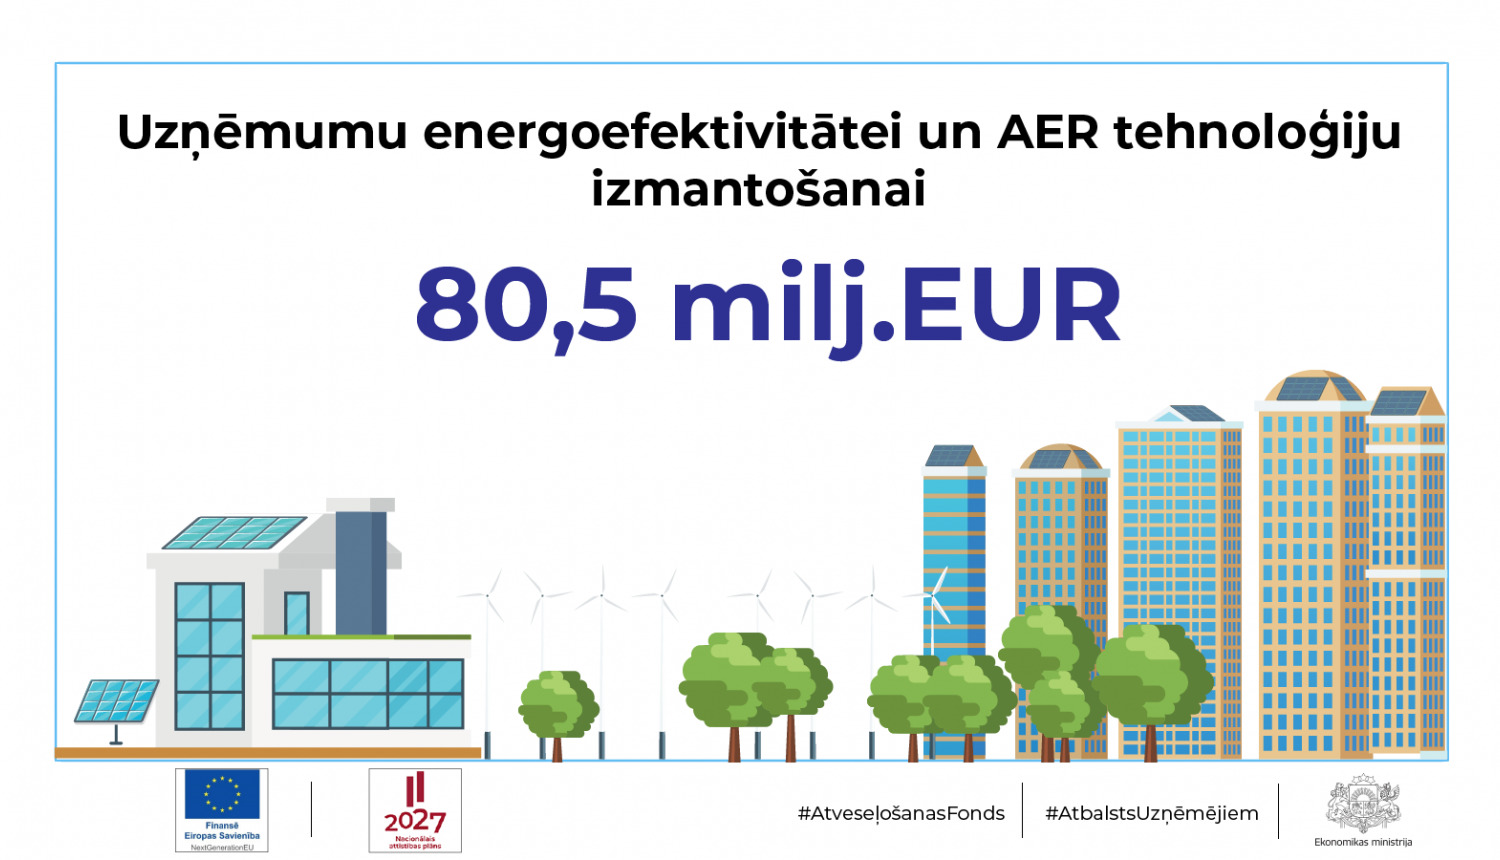 Uzņēmumu energoefektivitātei un pārejai uz atjaunojamo energoresursu tehnoloģijām būs pieejami 80,5 milj. eiro no Atveseļošanas fonda